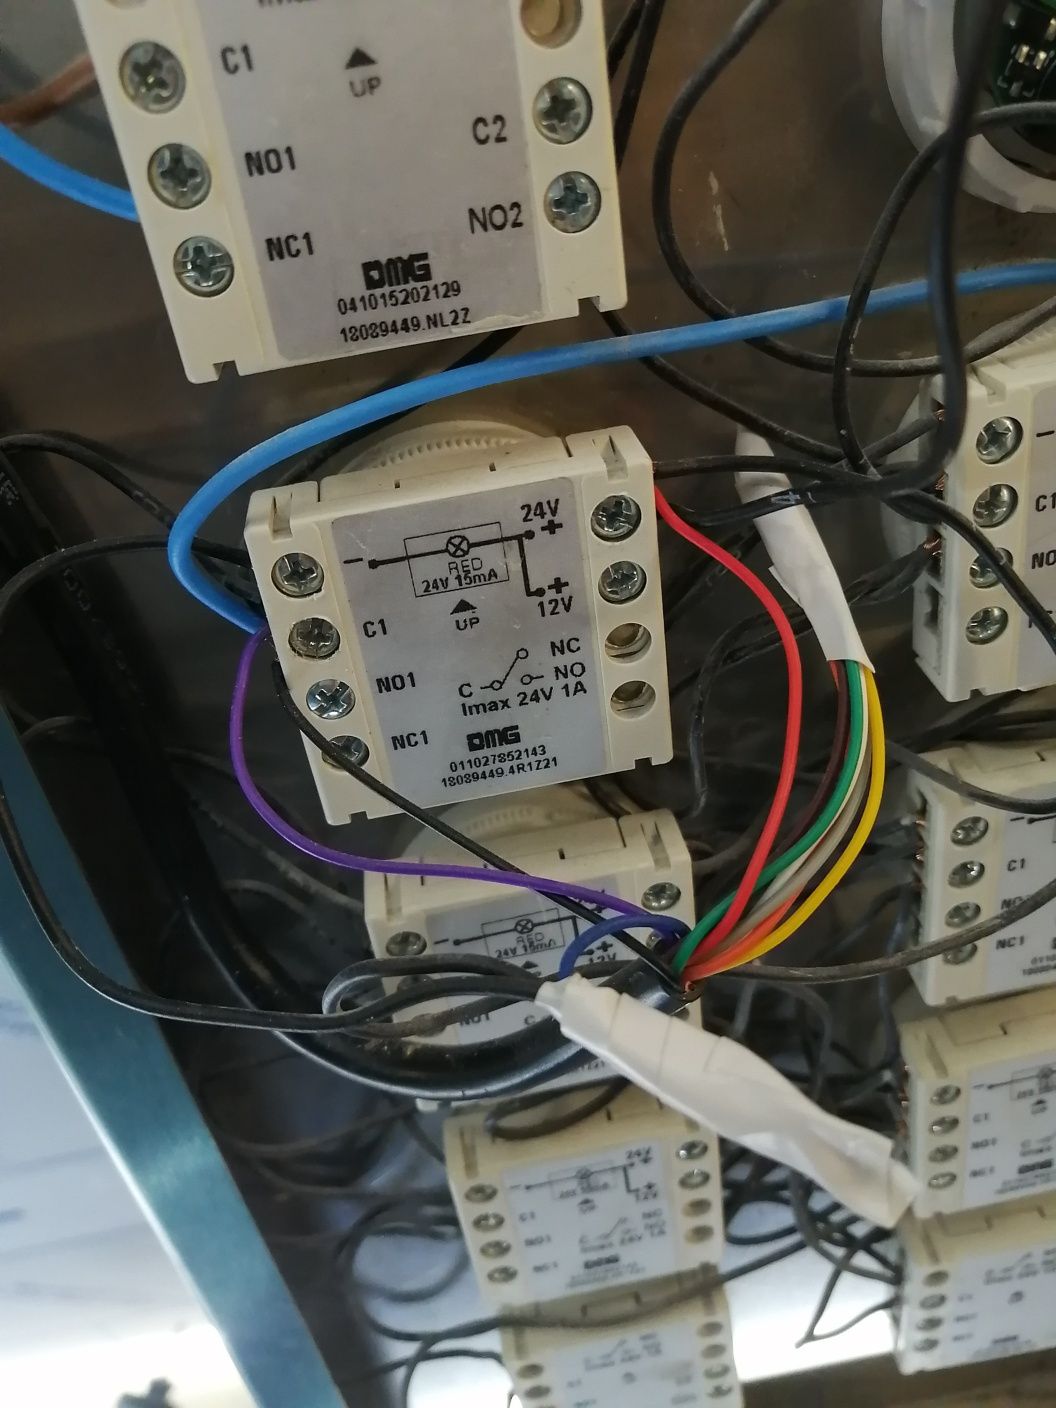 Electrician Autorizat ANRE Constanța - case noi preț bun